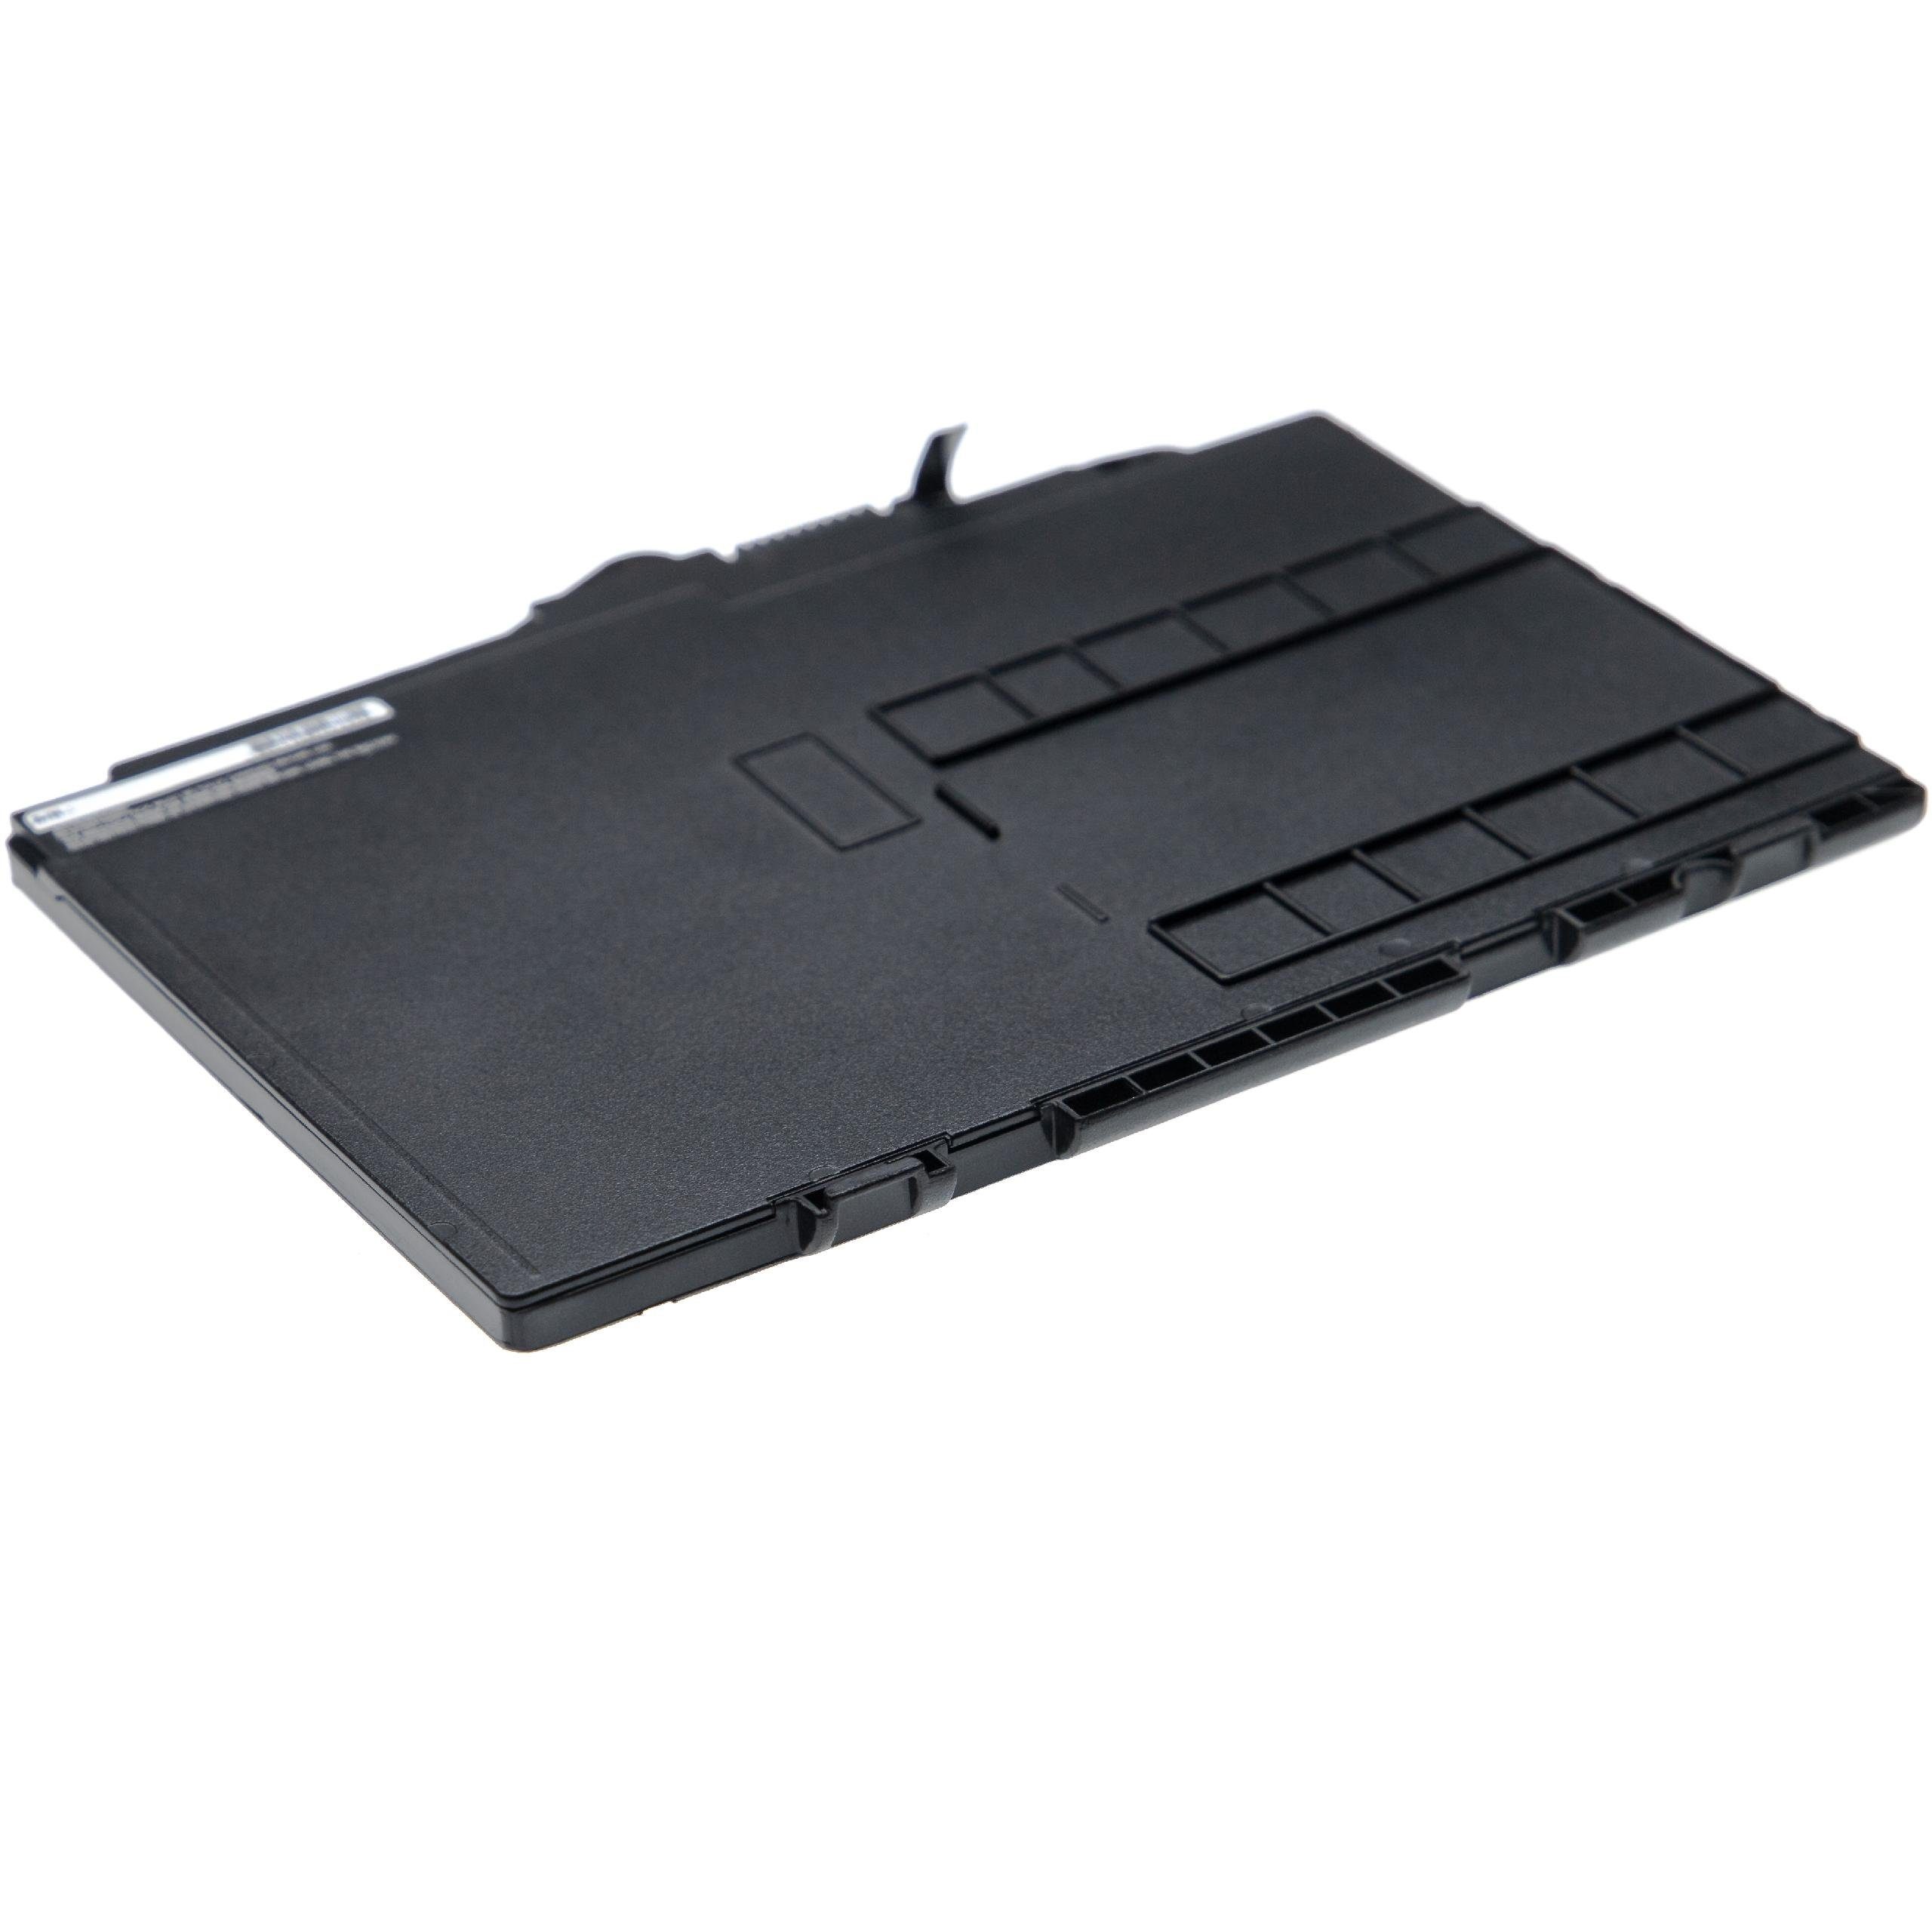 vhbw passend für HP EliteBook 3800 G4 1LH27PC, mAh G4 Laptop-Akku 828 828 828 G4 1LH23PC